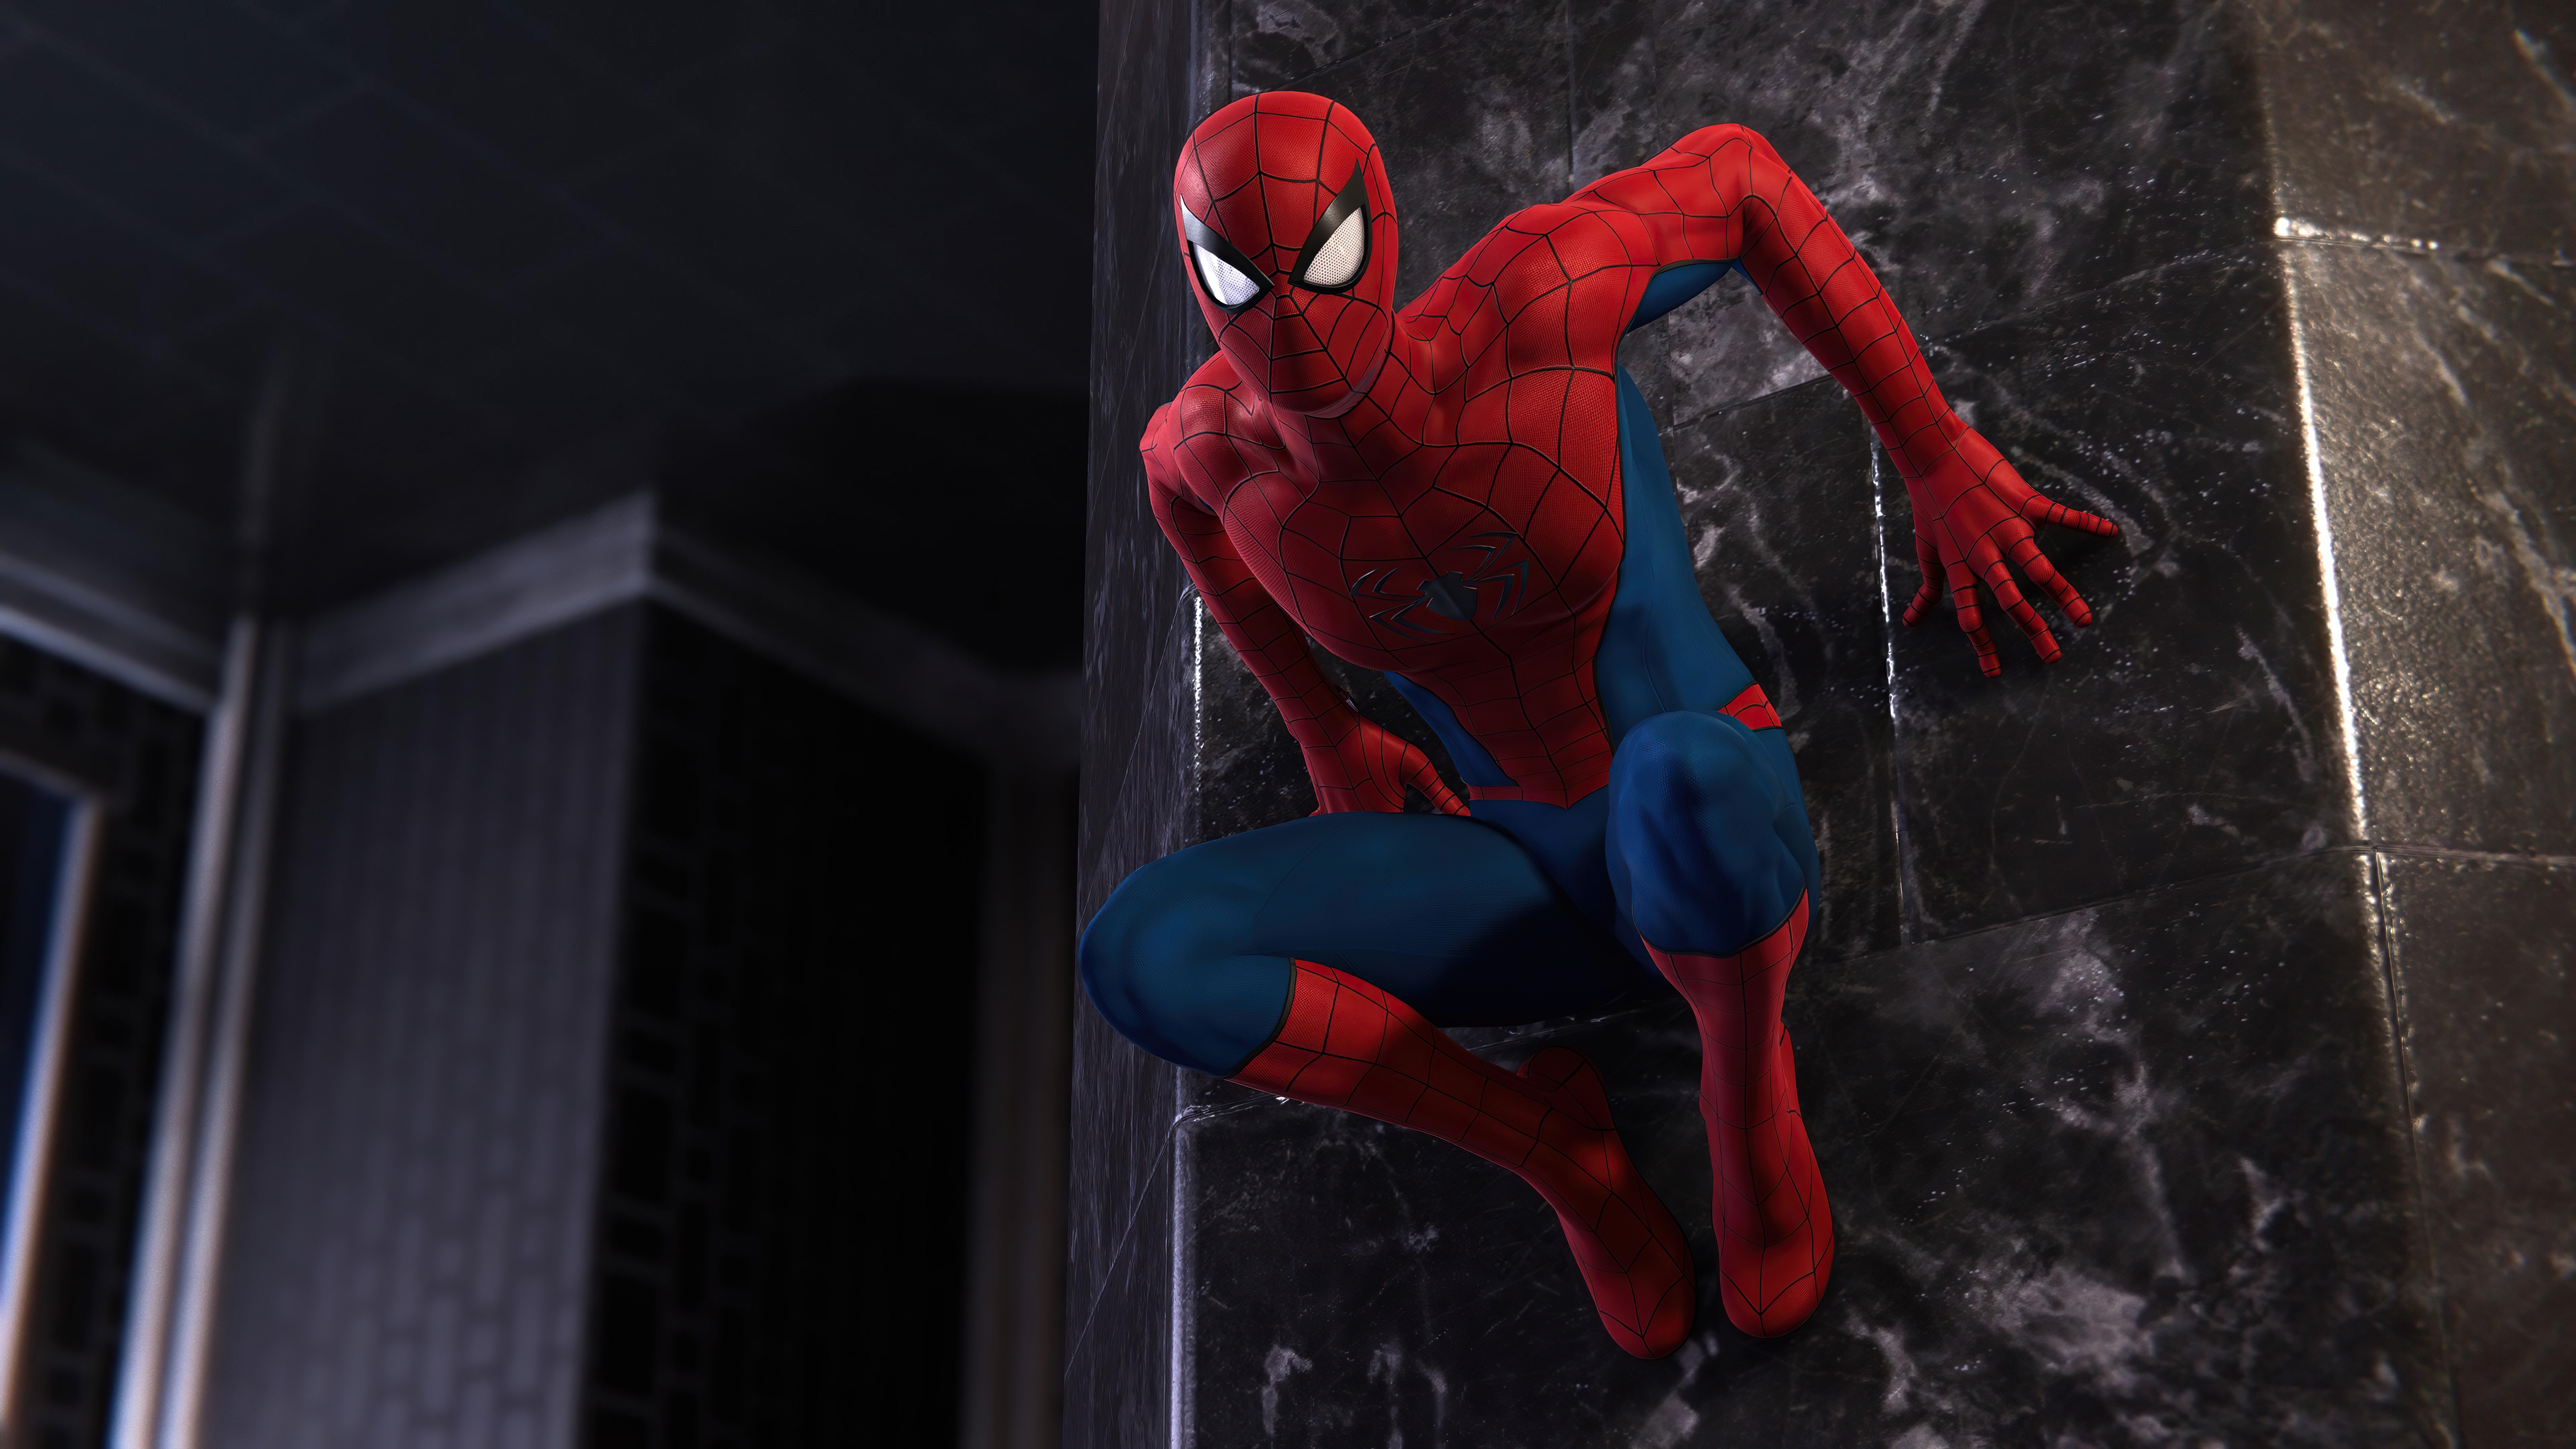 HD wallpaper, Spiderman, Playstation 5, 5K, 2021 Games, Spider Man